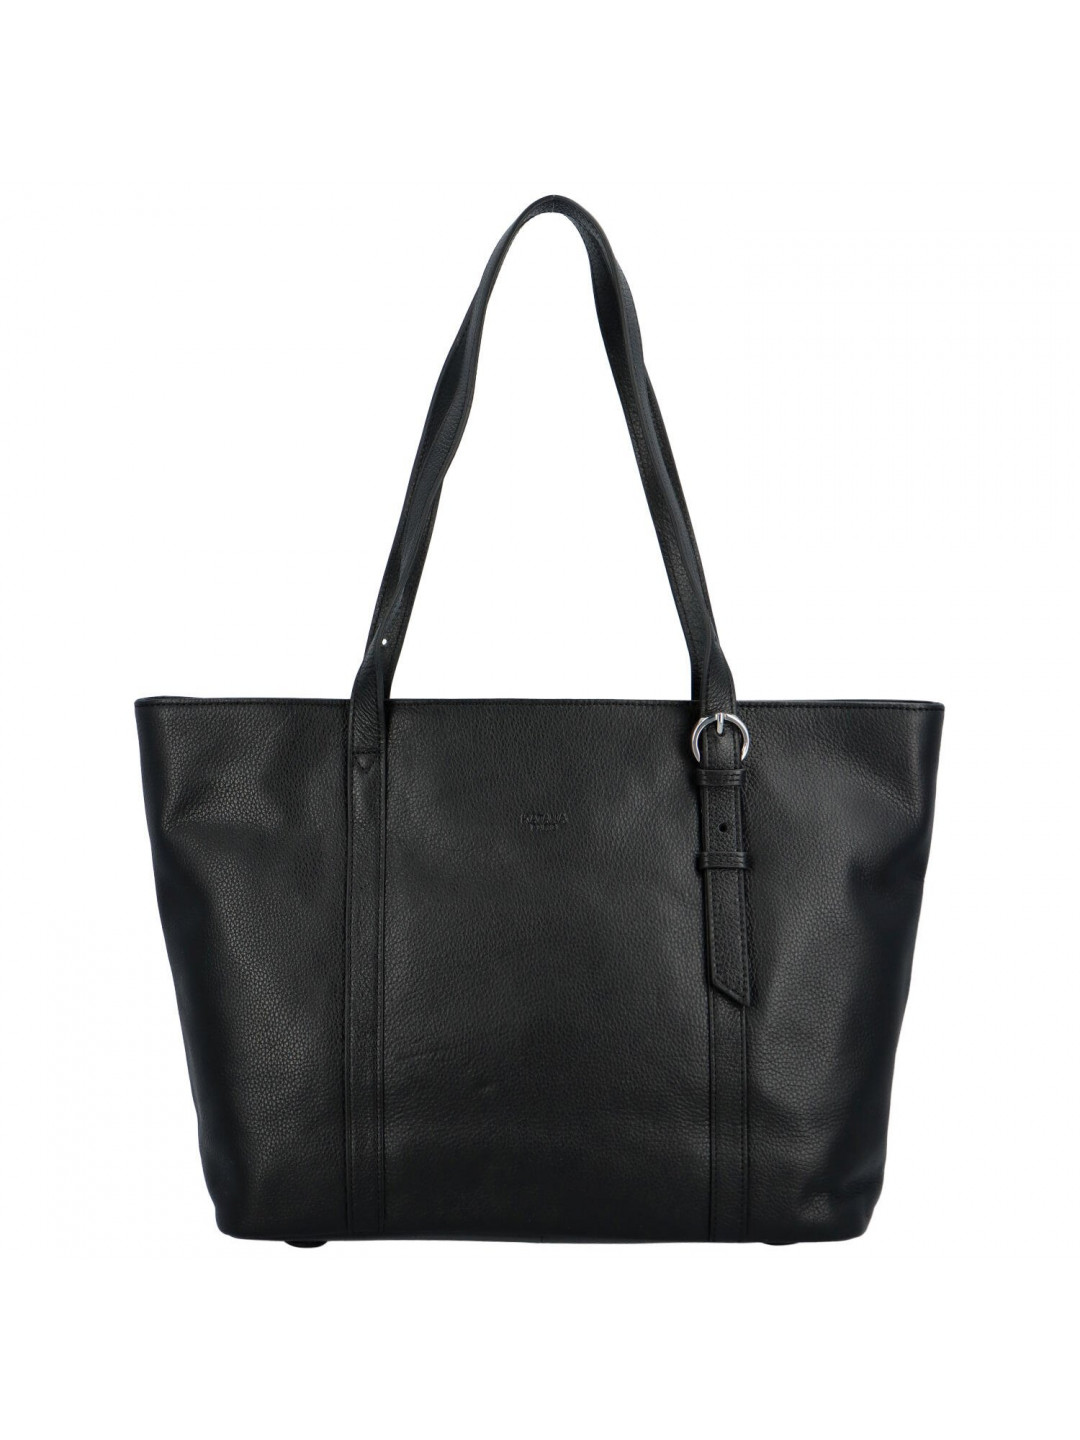 Dámská kožená kabelka přes rameno černá – Katana Nuilia